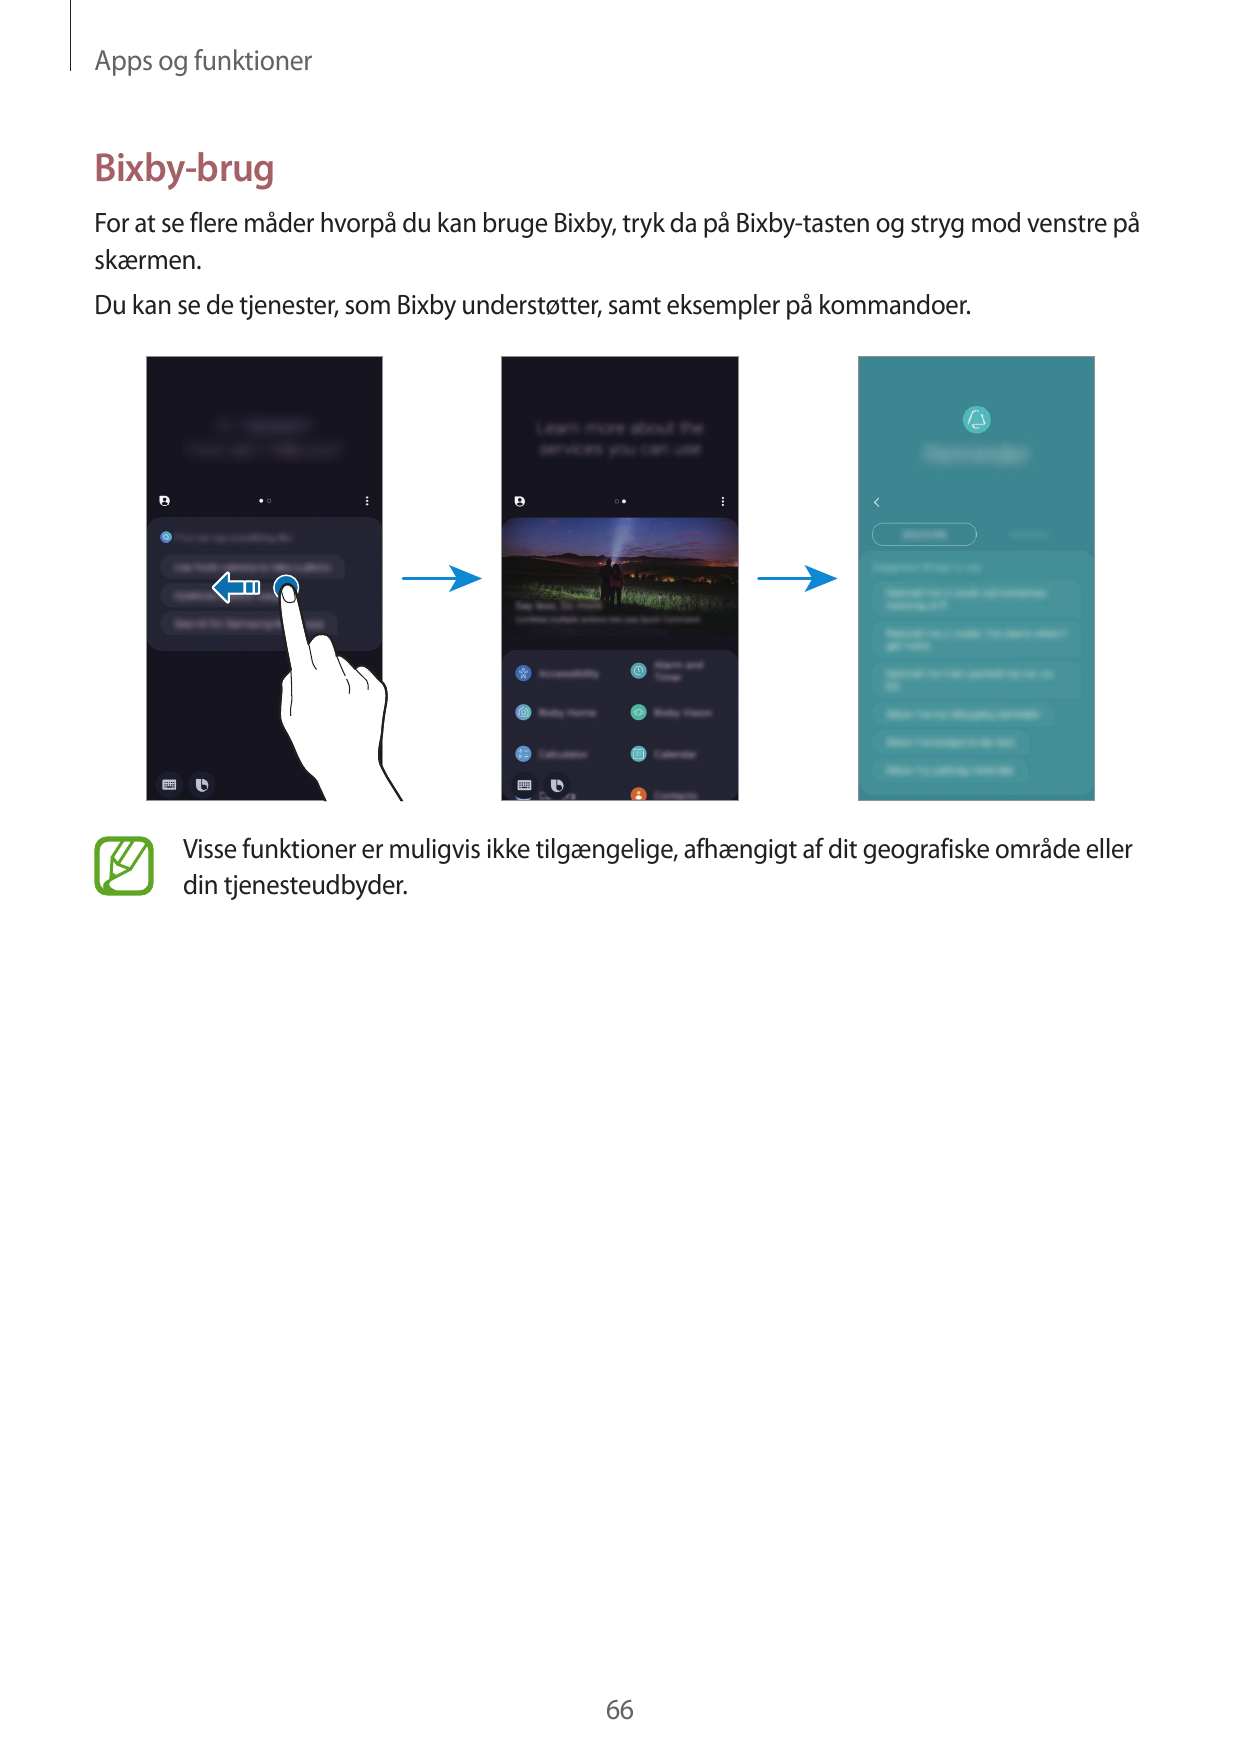 Apps og funktionerBixby-brugFor at se flere måder hvorpå du kan bruge Bixby, tryk da på Bixby-tasten og stryg mod venstre påskær